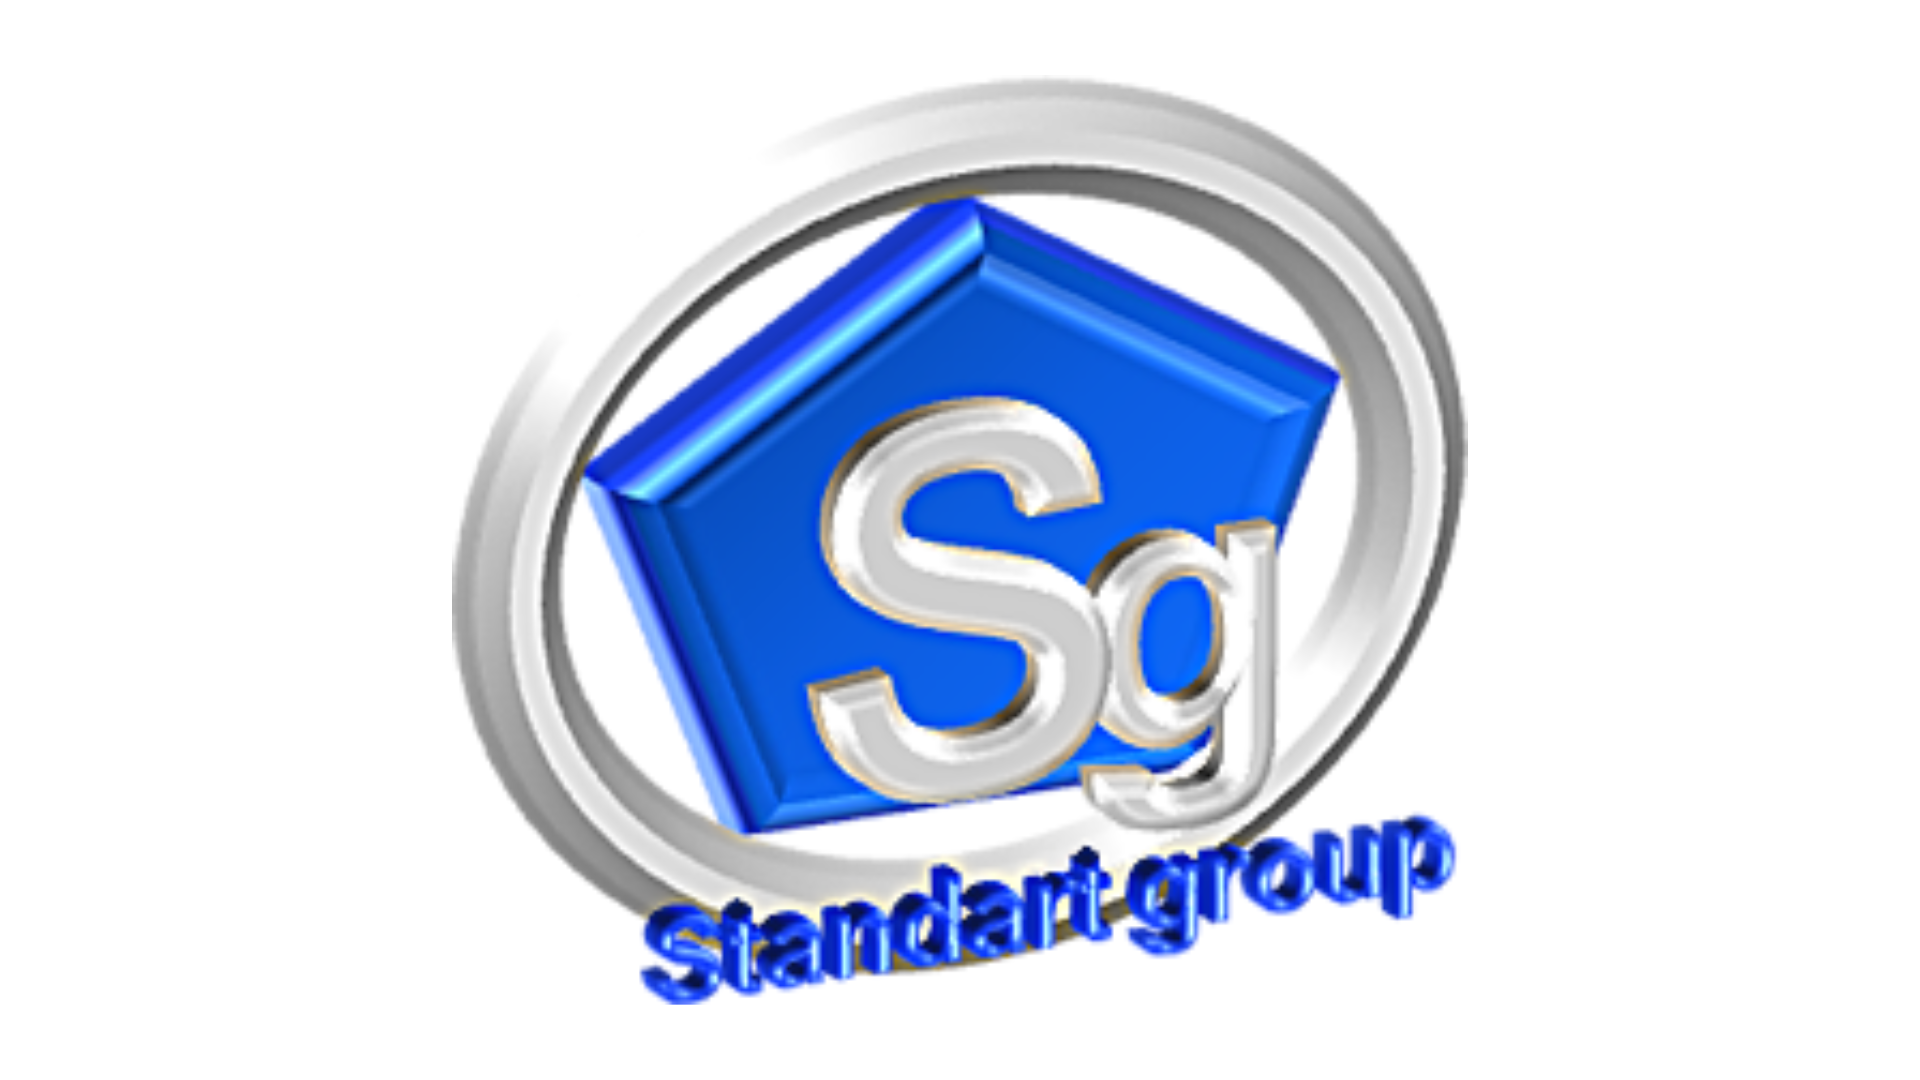 Standart Group